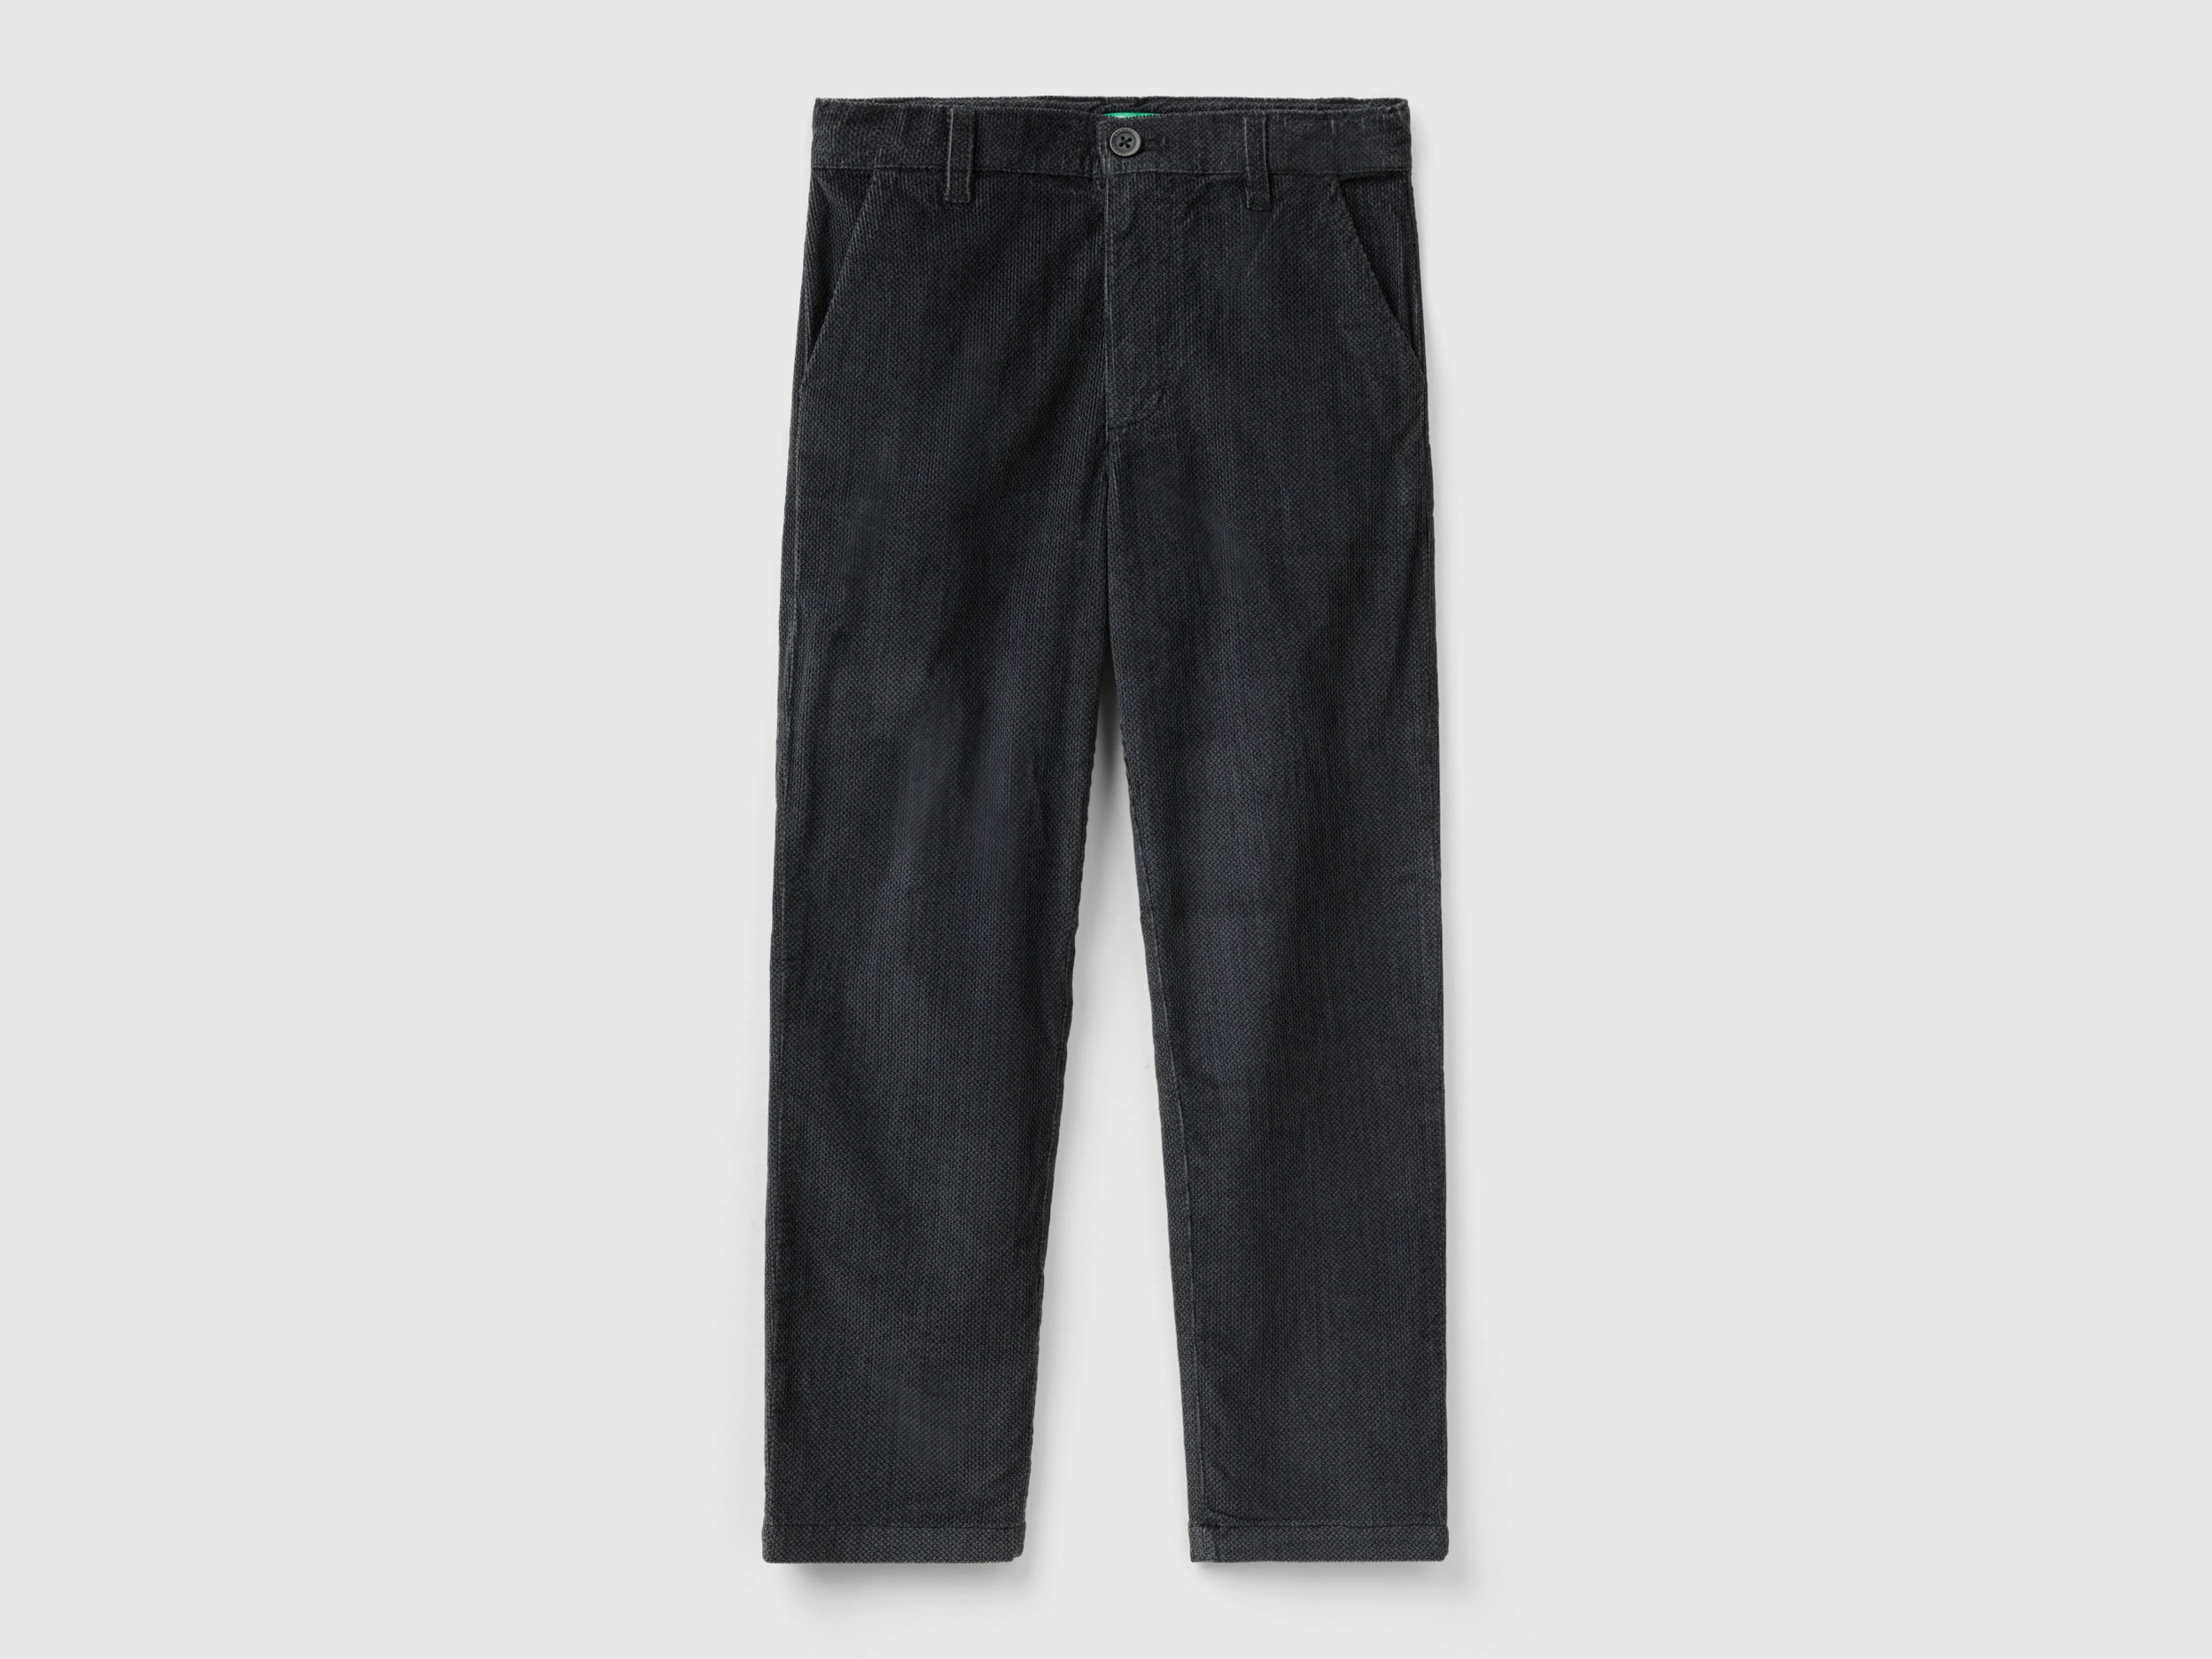 Benetton, Slim Fit Velvet Pants, size M, Dark Gray, Kids